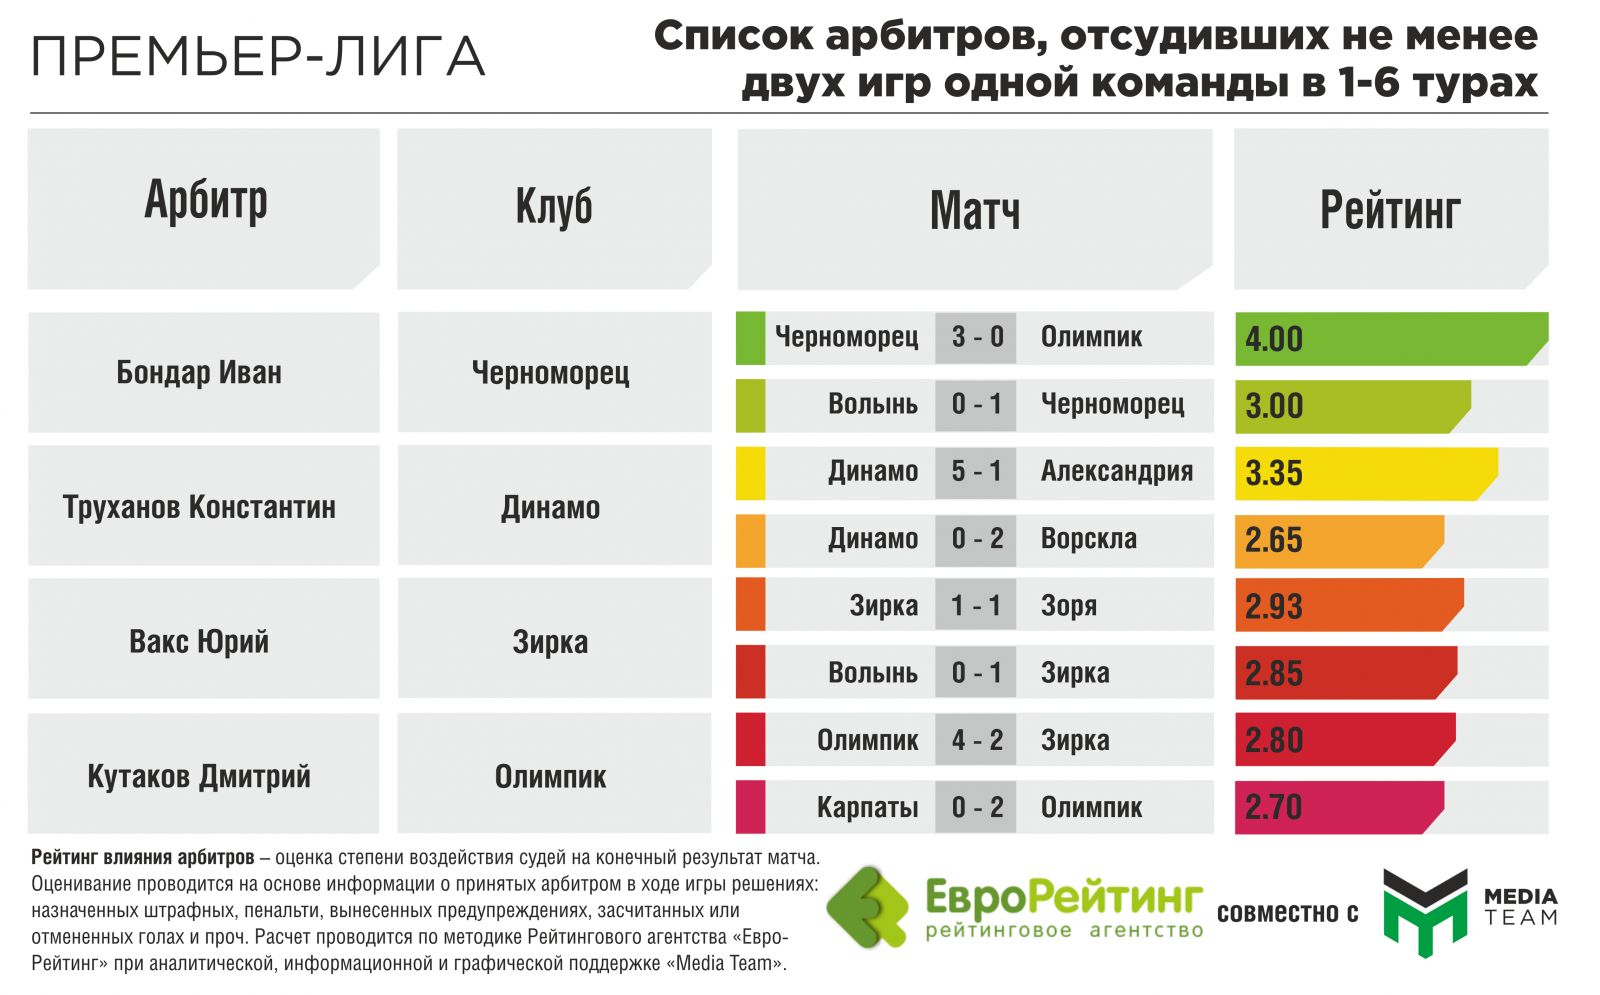 Match rating. Матча рейтинг производителей. Судьи Украины список.